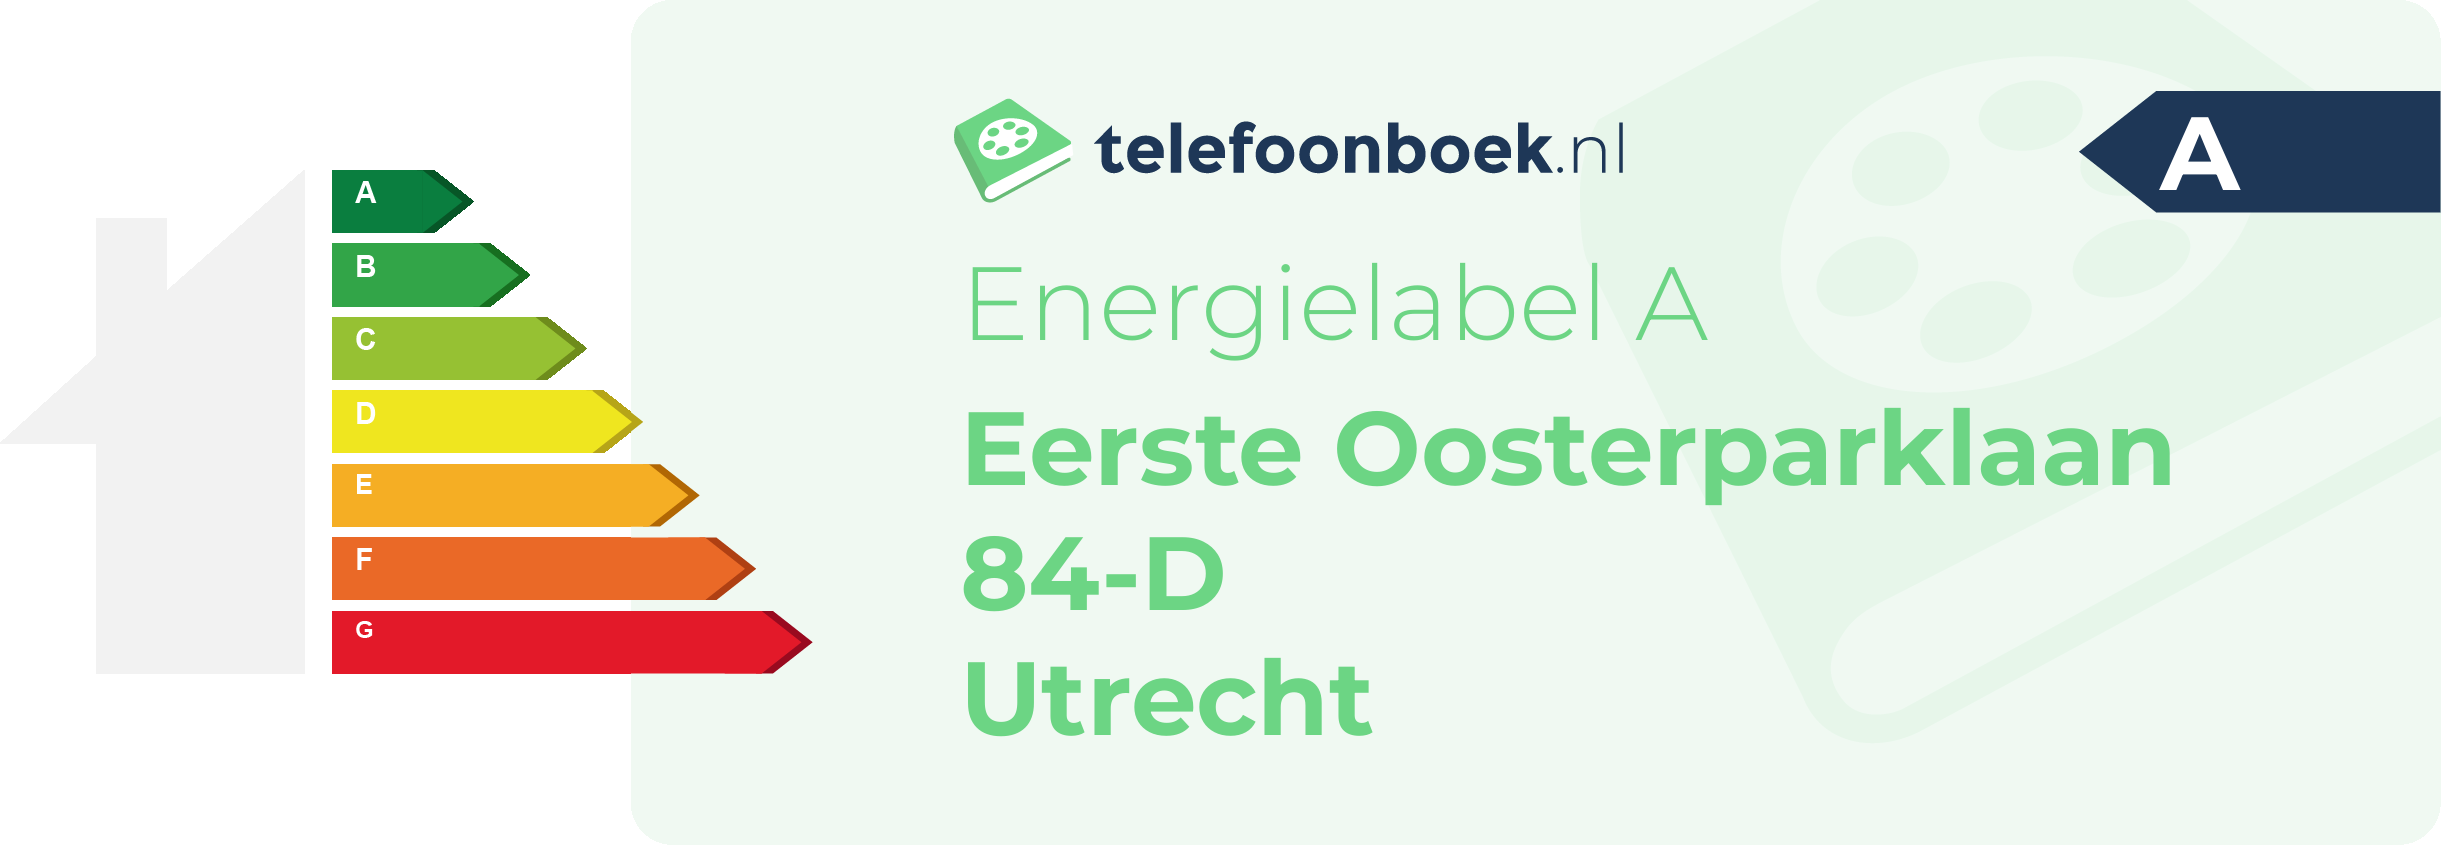 Energielabel Eerste Oosterparklaan 84-D Utrecht